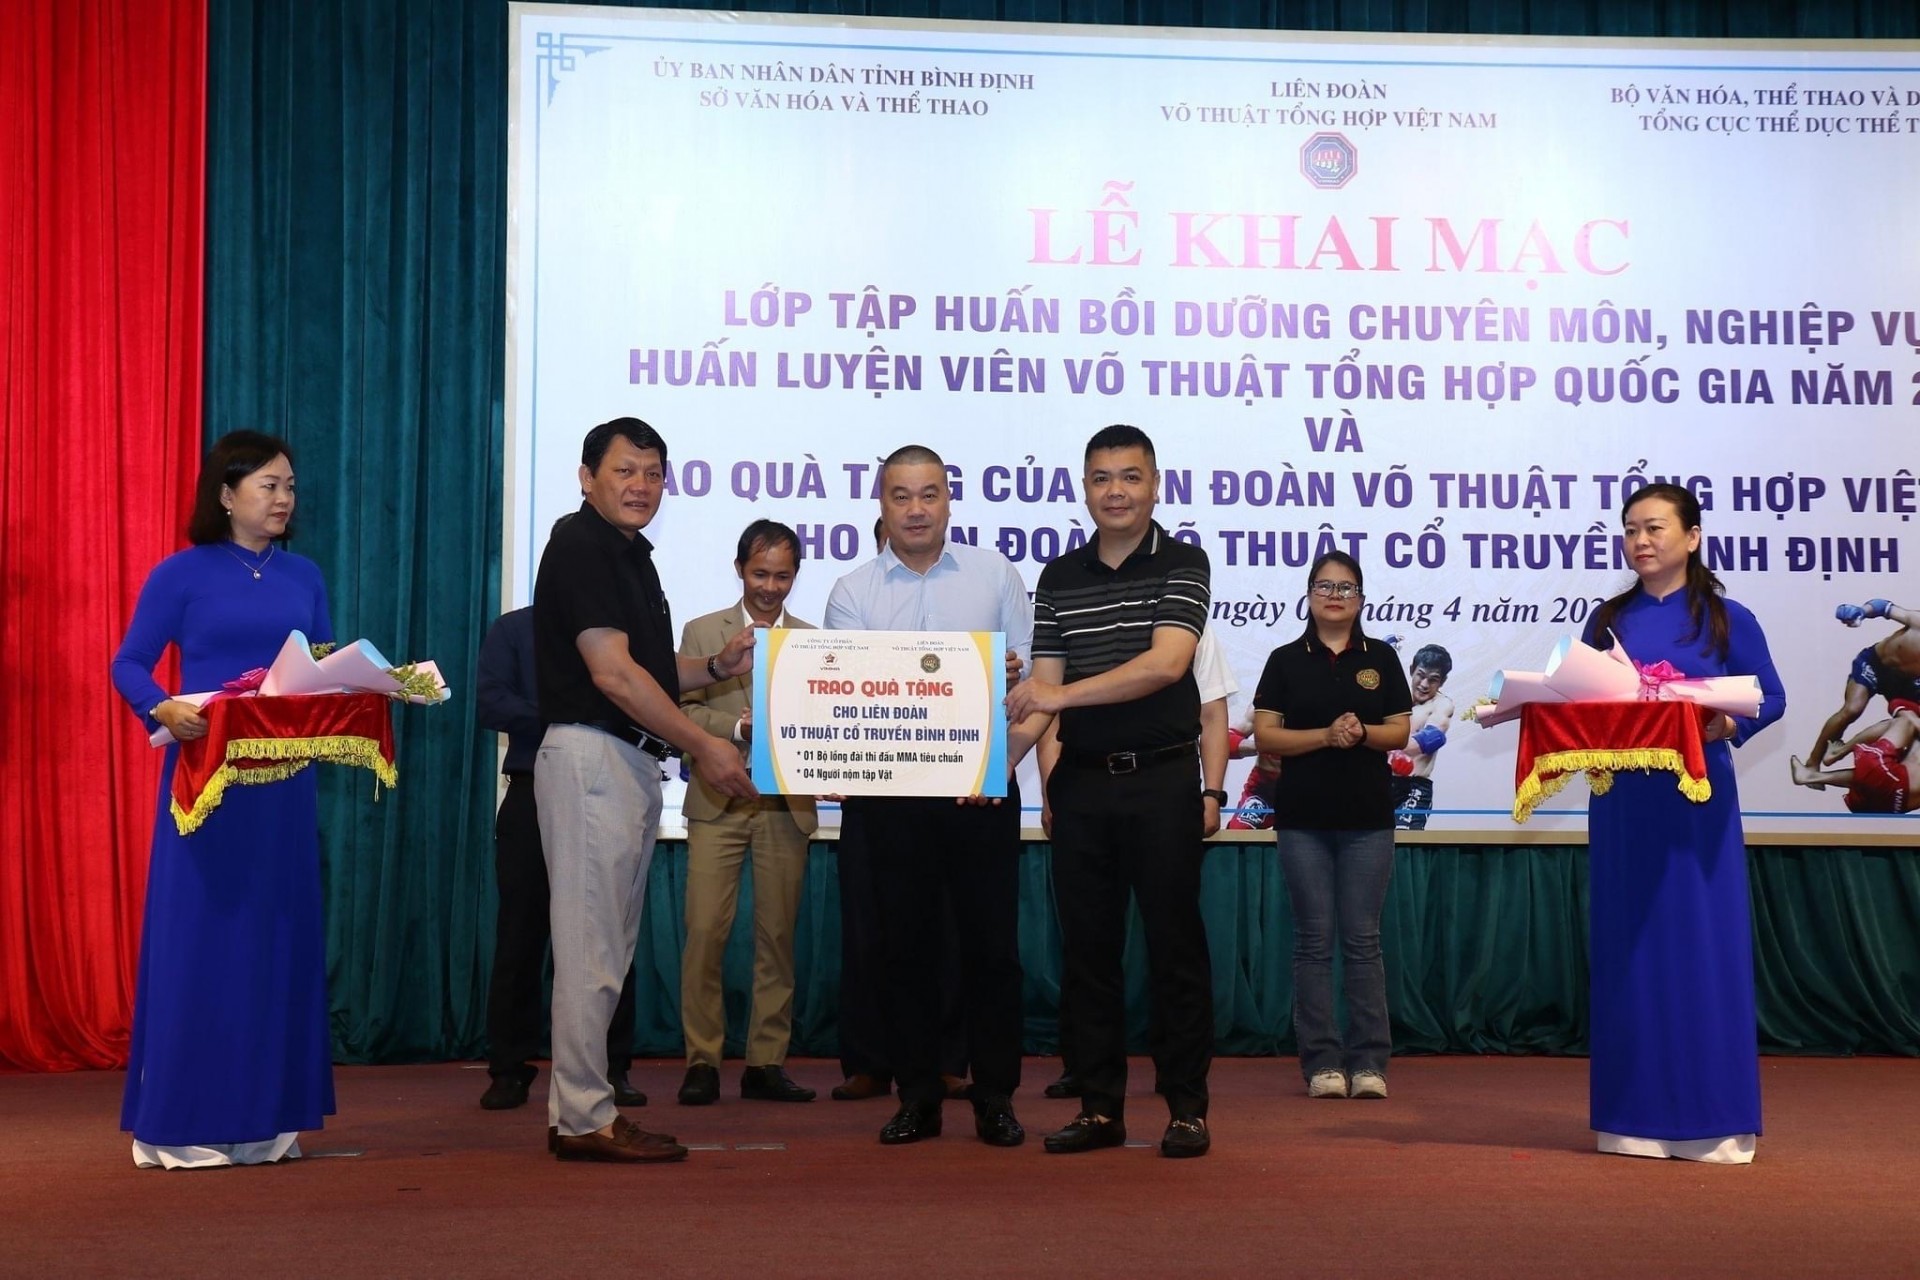 Liên đoàn Võ thuật Tổng hợp Việt Nam (VMMAF) cùng Công ty Cổ phần Võ thuật Tổng hợp Việt Nam (VIMMA) đã trao quà tặng cho Liên đoàn Võ thuật Cổ truyền Bình Định (1 lồng thi đấu MMA tiêu chuẩn và 4 hình nộm tập đối kháng). 